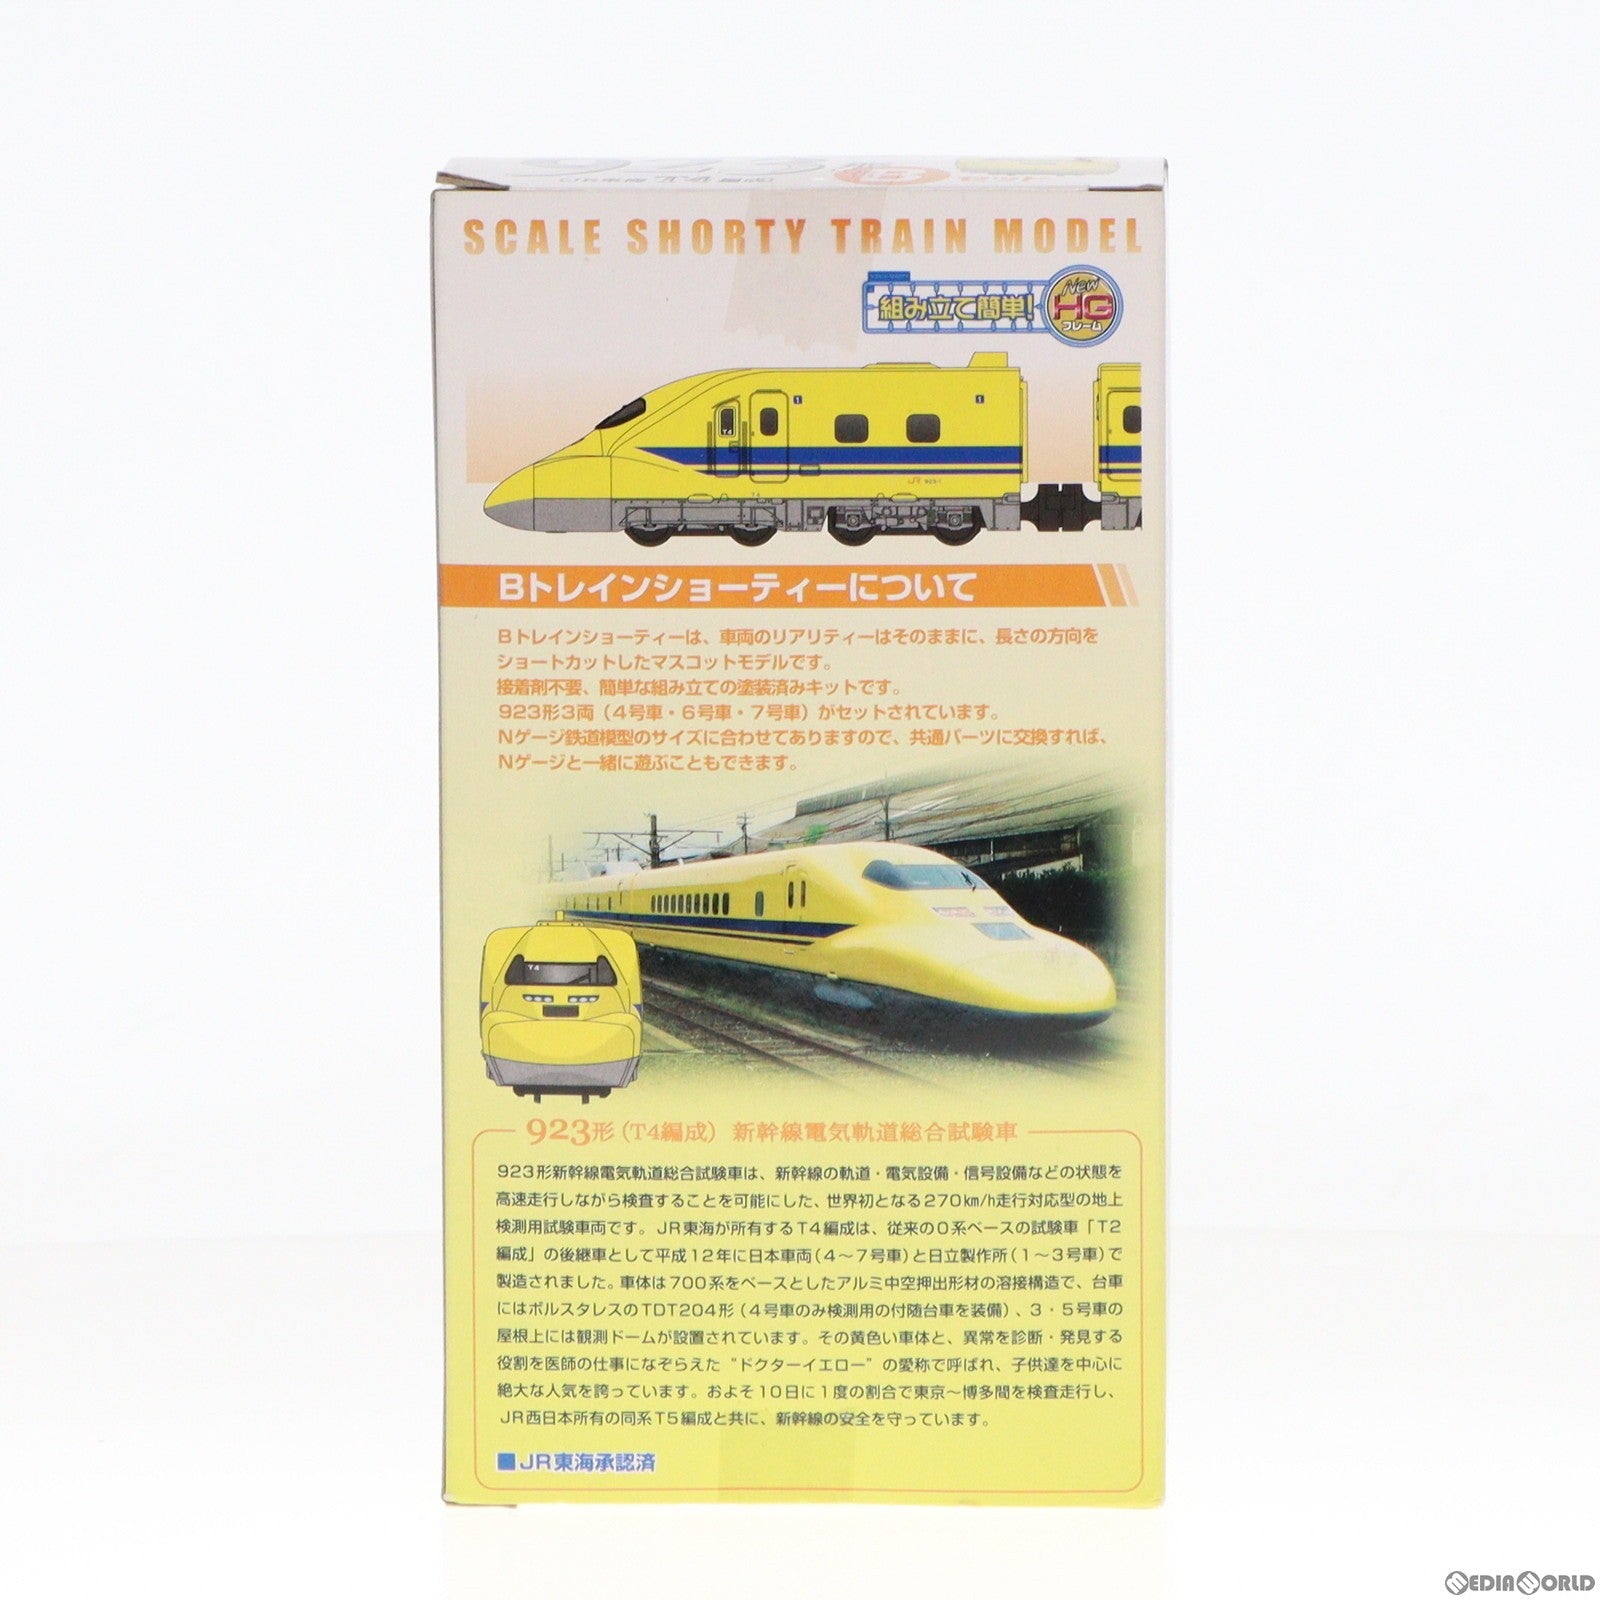 【中古即納】[RWM]Bトレインショーティー 新幹線電気軌道総合試験車 ドクターイエロー 923形 JR東海T4編成 Bセット 3両セット 組み立てキット Nゲージ 鉄道模型(20101224)